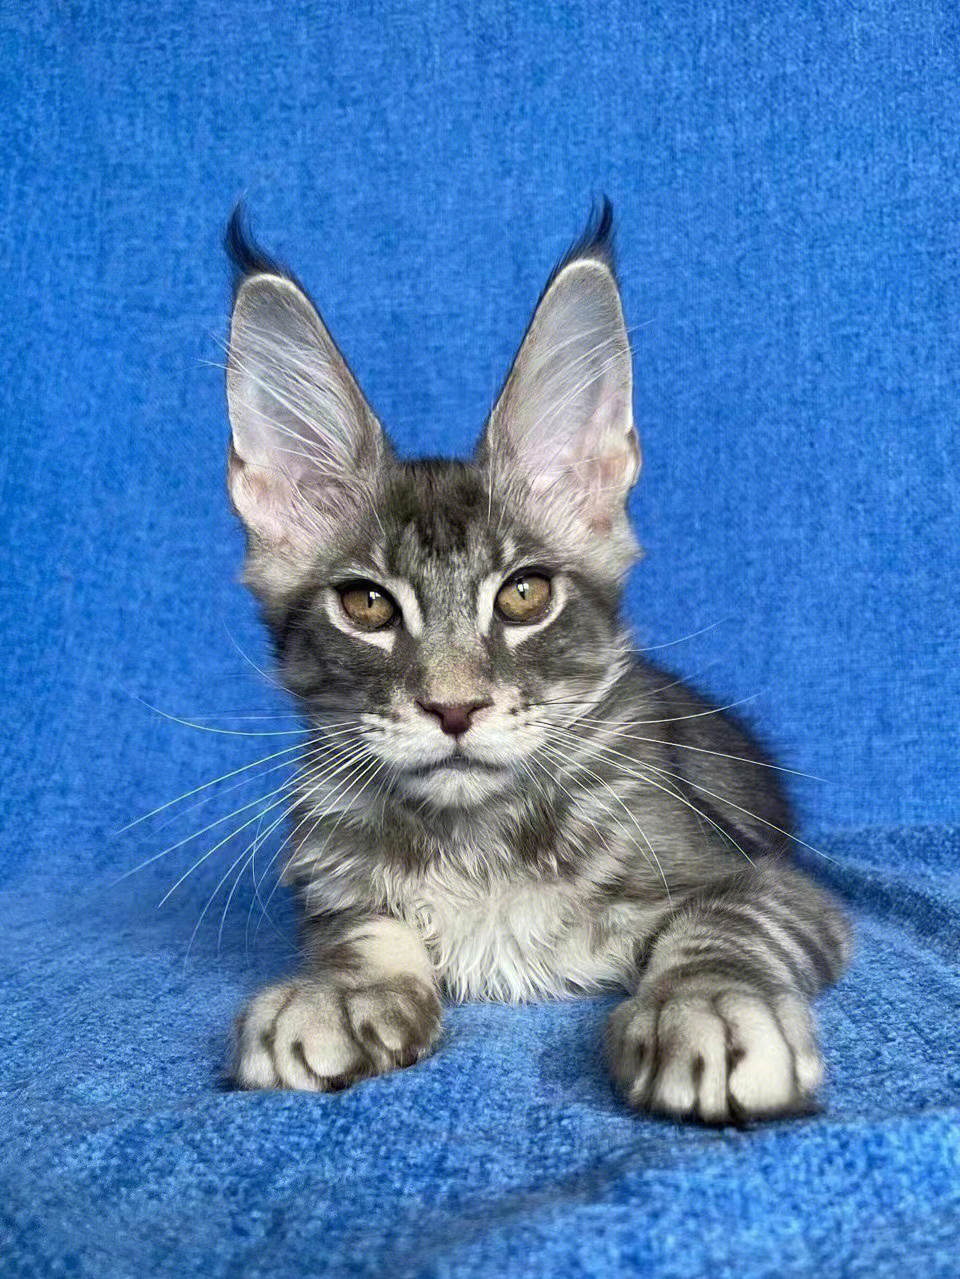 缅因猫长出了小白兔的耳朵